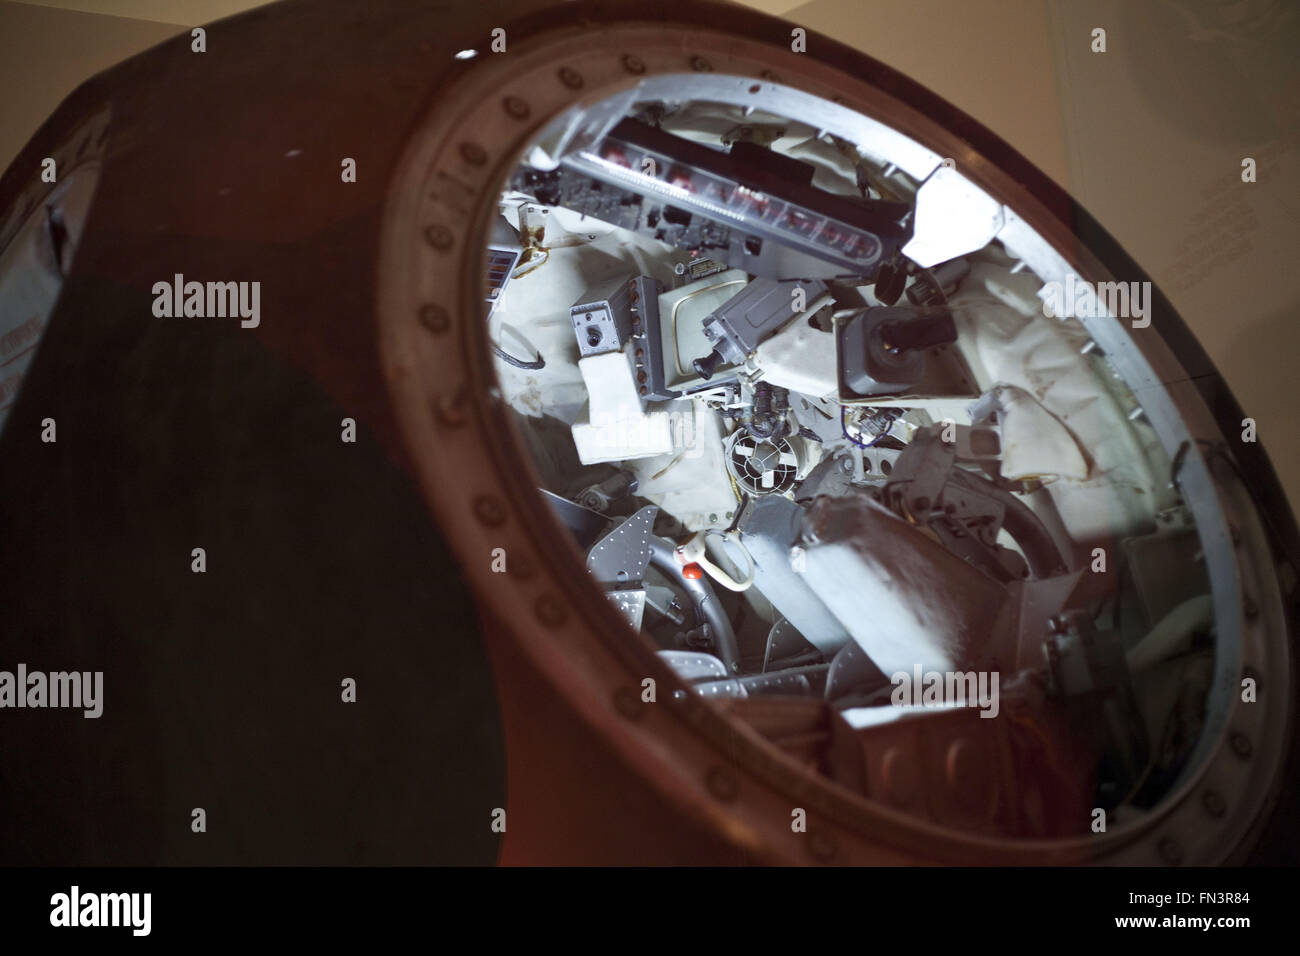 Londres, Reino Unido. 12 Mar, 2016. Los cosmonautas: el nacimiento de la era espacial.El Museo de la ciencia exposición ha reunido una importante colección de nave rusa y artefactos que jamás se muestra en el Reino Unido. En 1957, Rusia lanzó el primer satélite artificial, el Sputnik, en el espacio y sólo cuatro años más tarde envió la primera derechos ''" Yuri Gagarin. Era Rusia que convirtió el sueño de los viajes espaciales en una realidad y se convirtió en la primera nación para explorar el espacio. En la pantalla fue Vostok 6: la cápsula volado por Valentina Tereshkova, la primera mujer en el espacio, la Voskhod 1: la cápsula usada en t Foto de stock